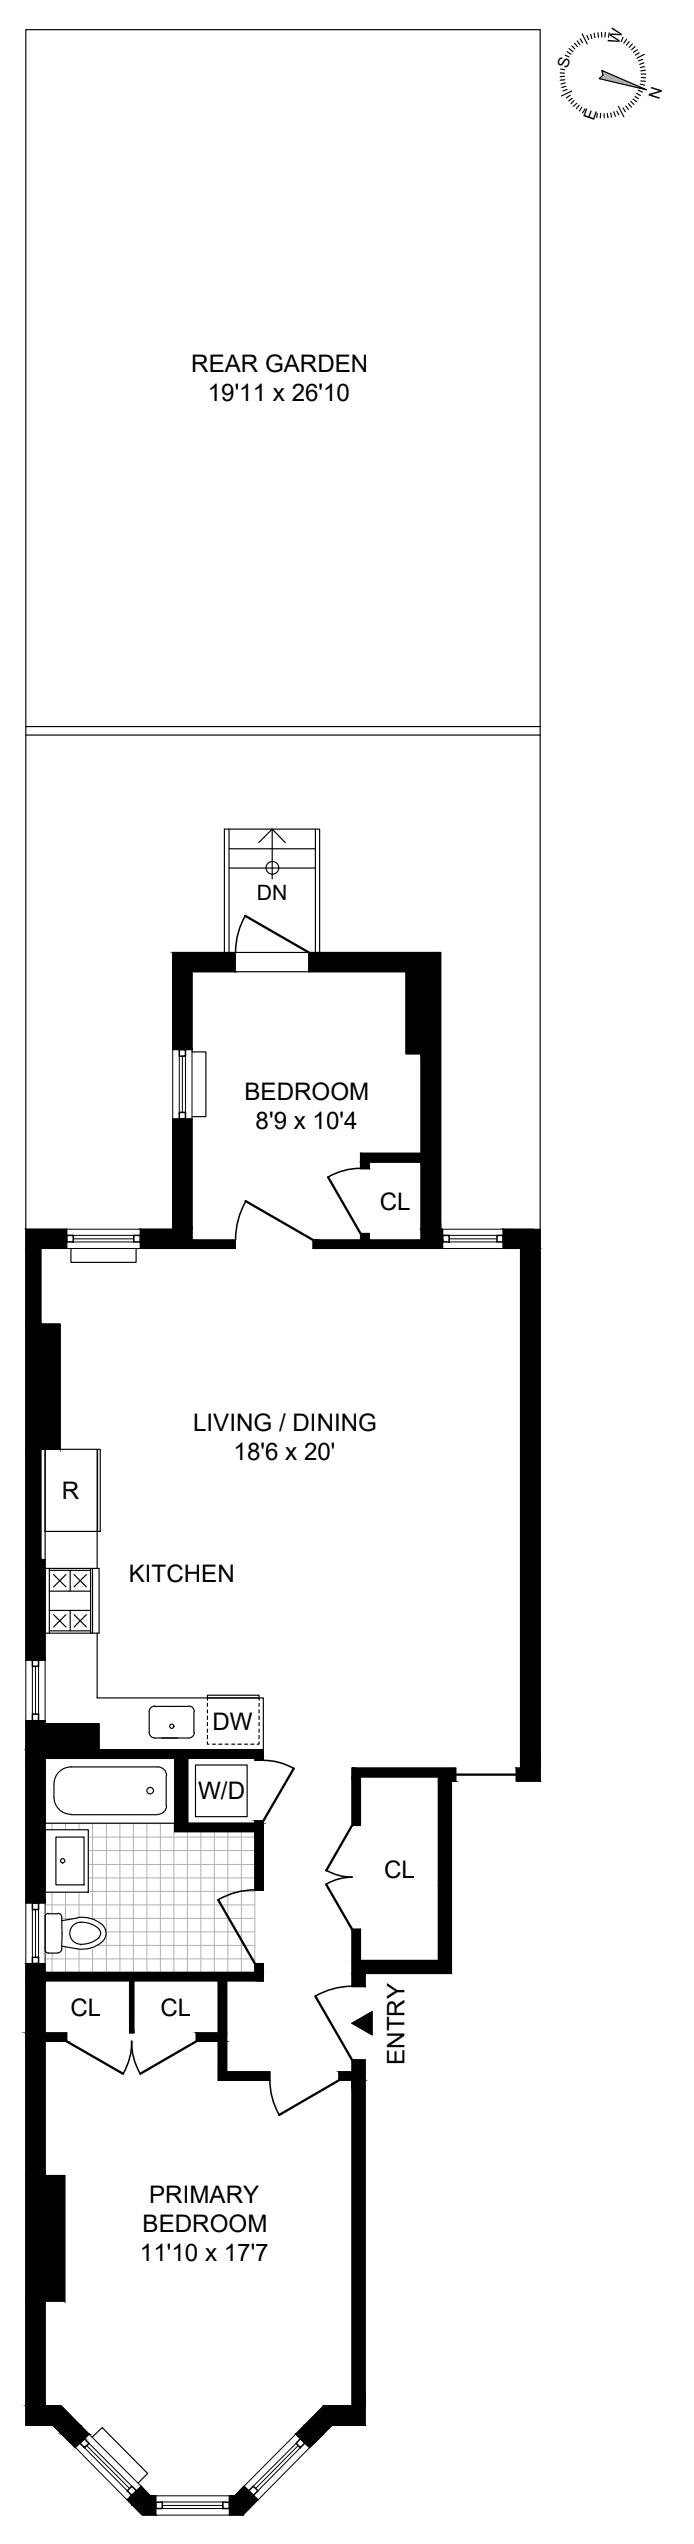 Floorplan for 49 Sutton Street, 1